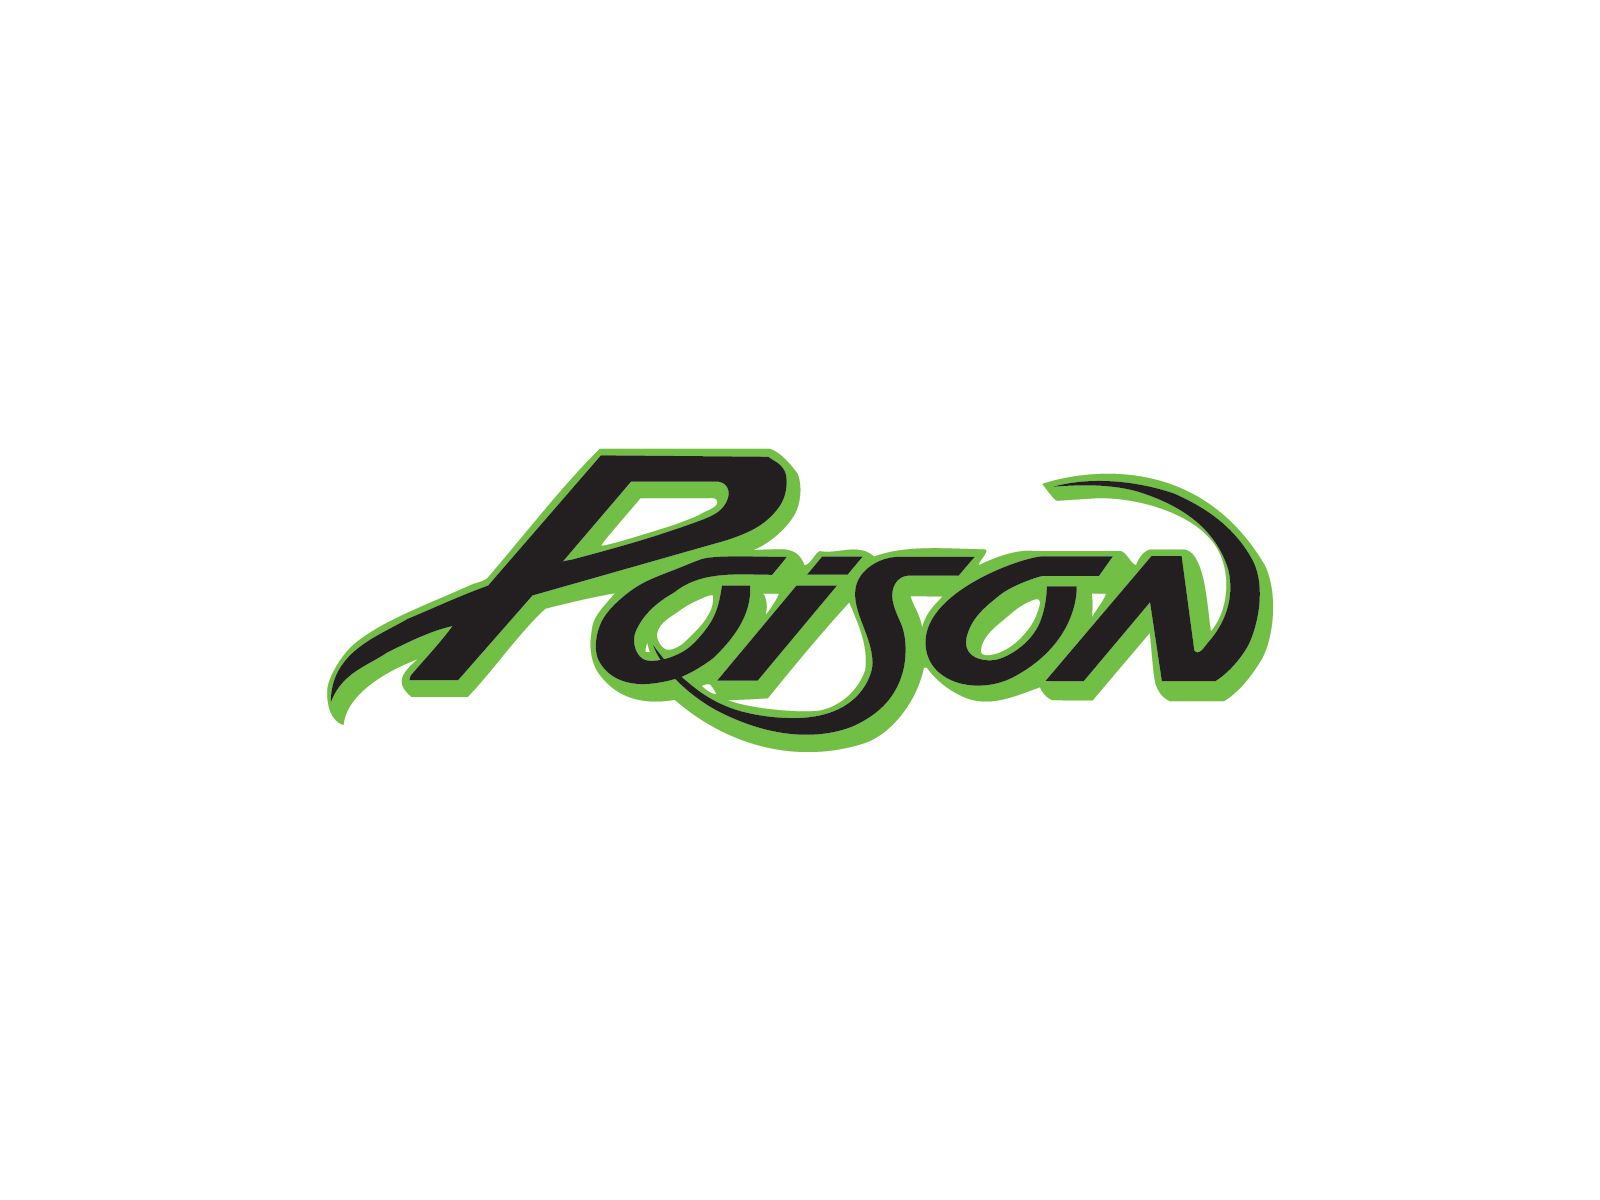 Poison band logo. Band logos, Rock band logos, Metal band logos